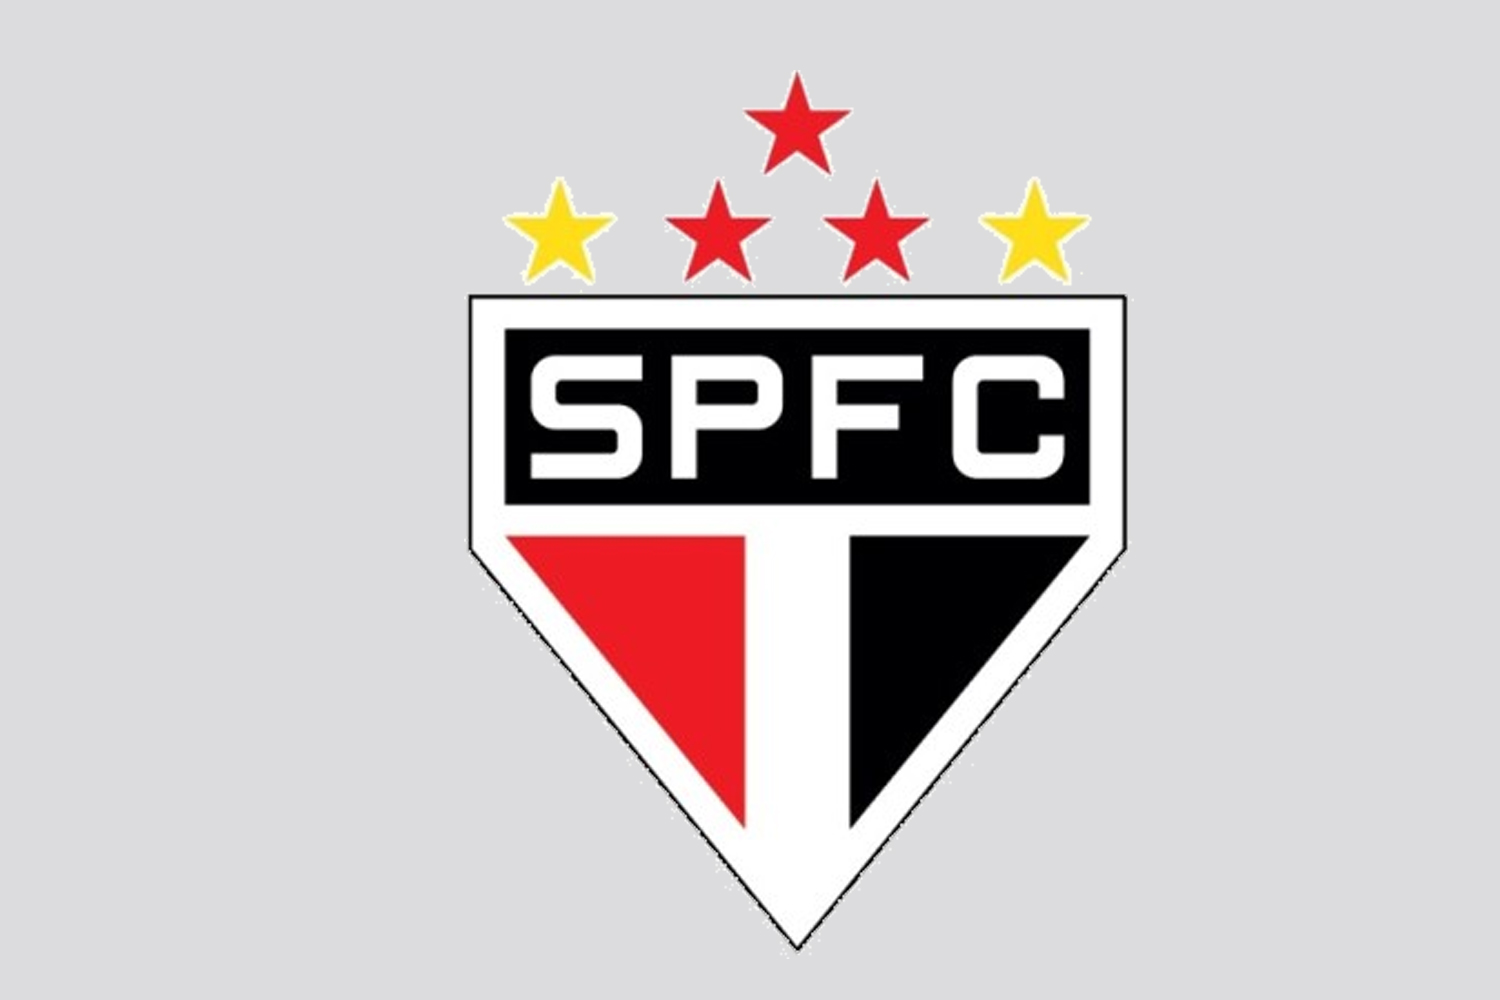 Toloi desaprova estreia no São Paulo: ‘Poderia ter sido com vitória’